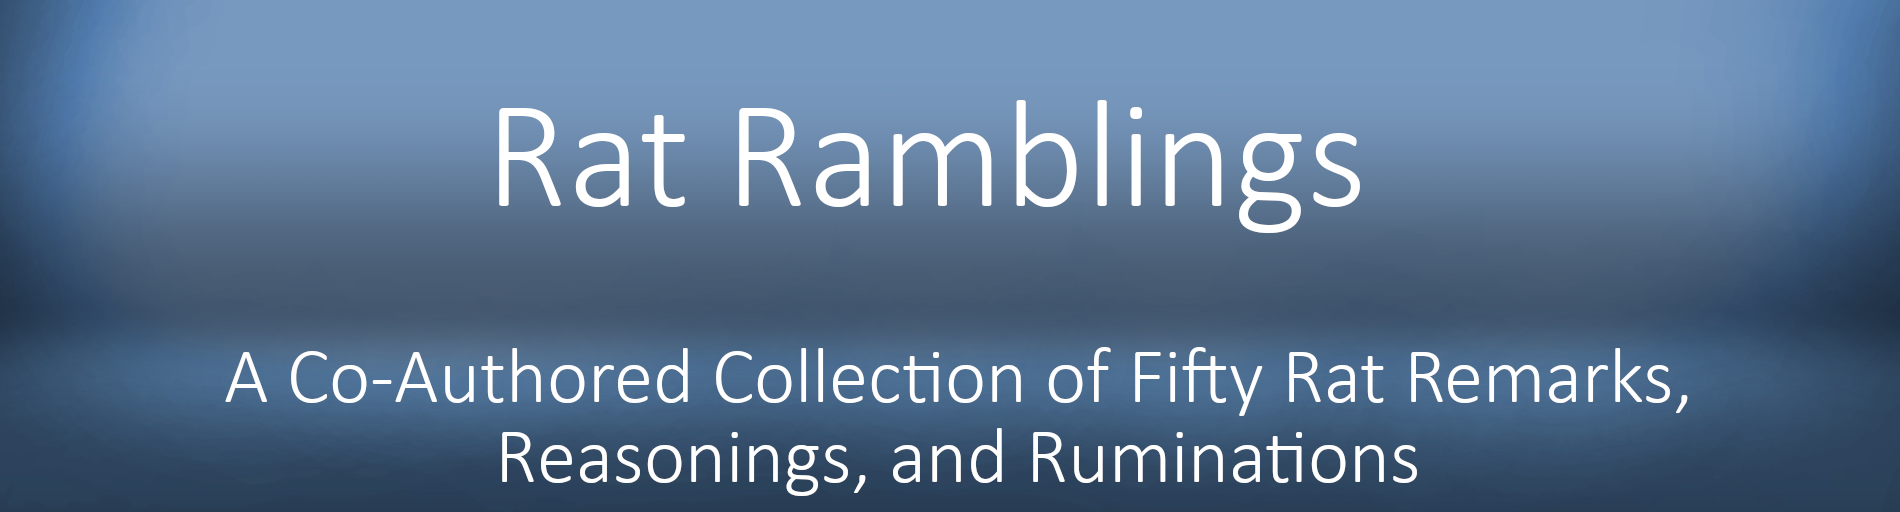 Rat Ramblings